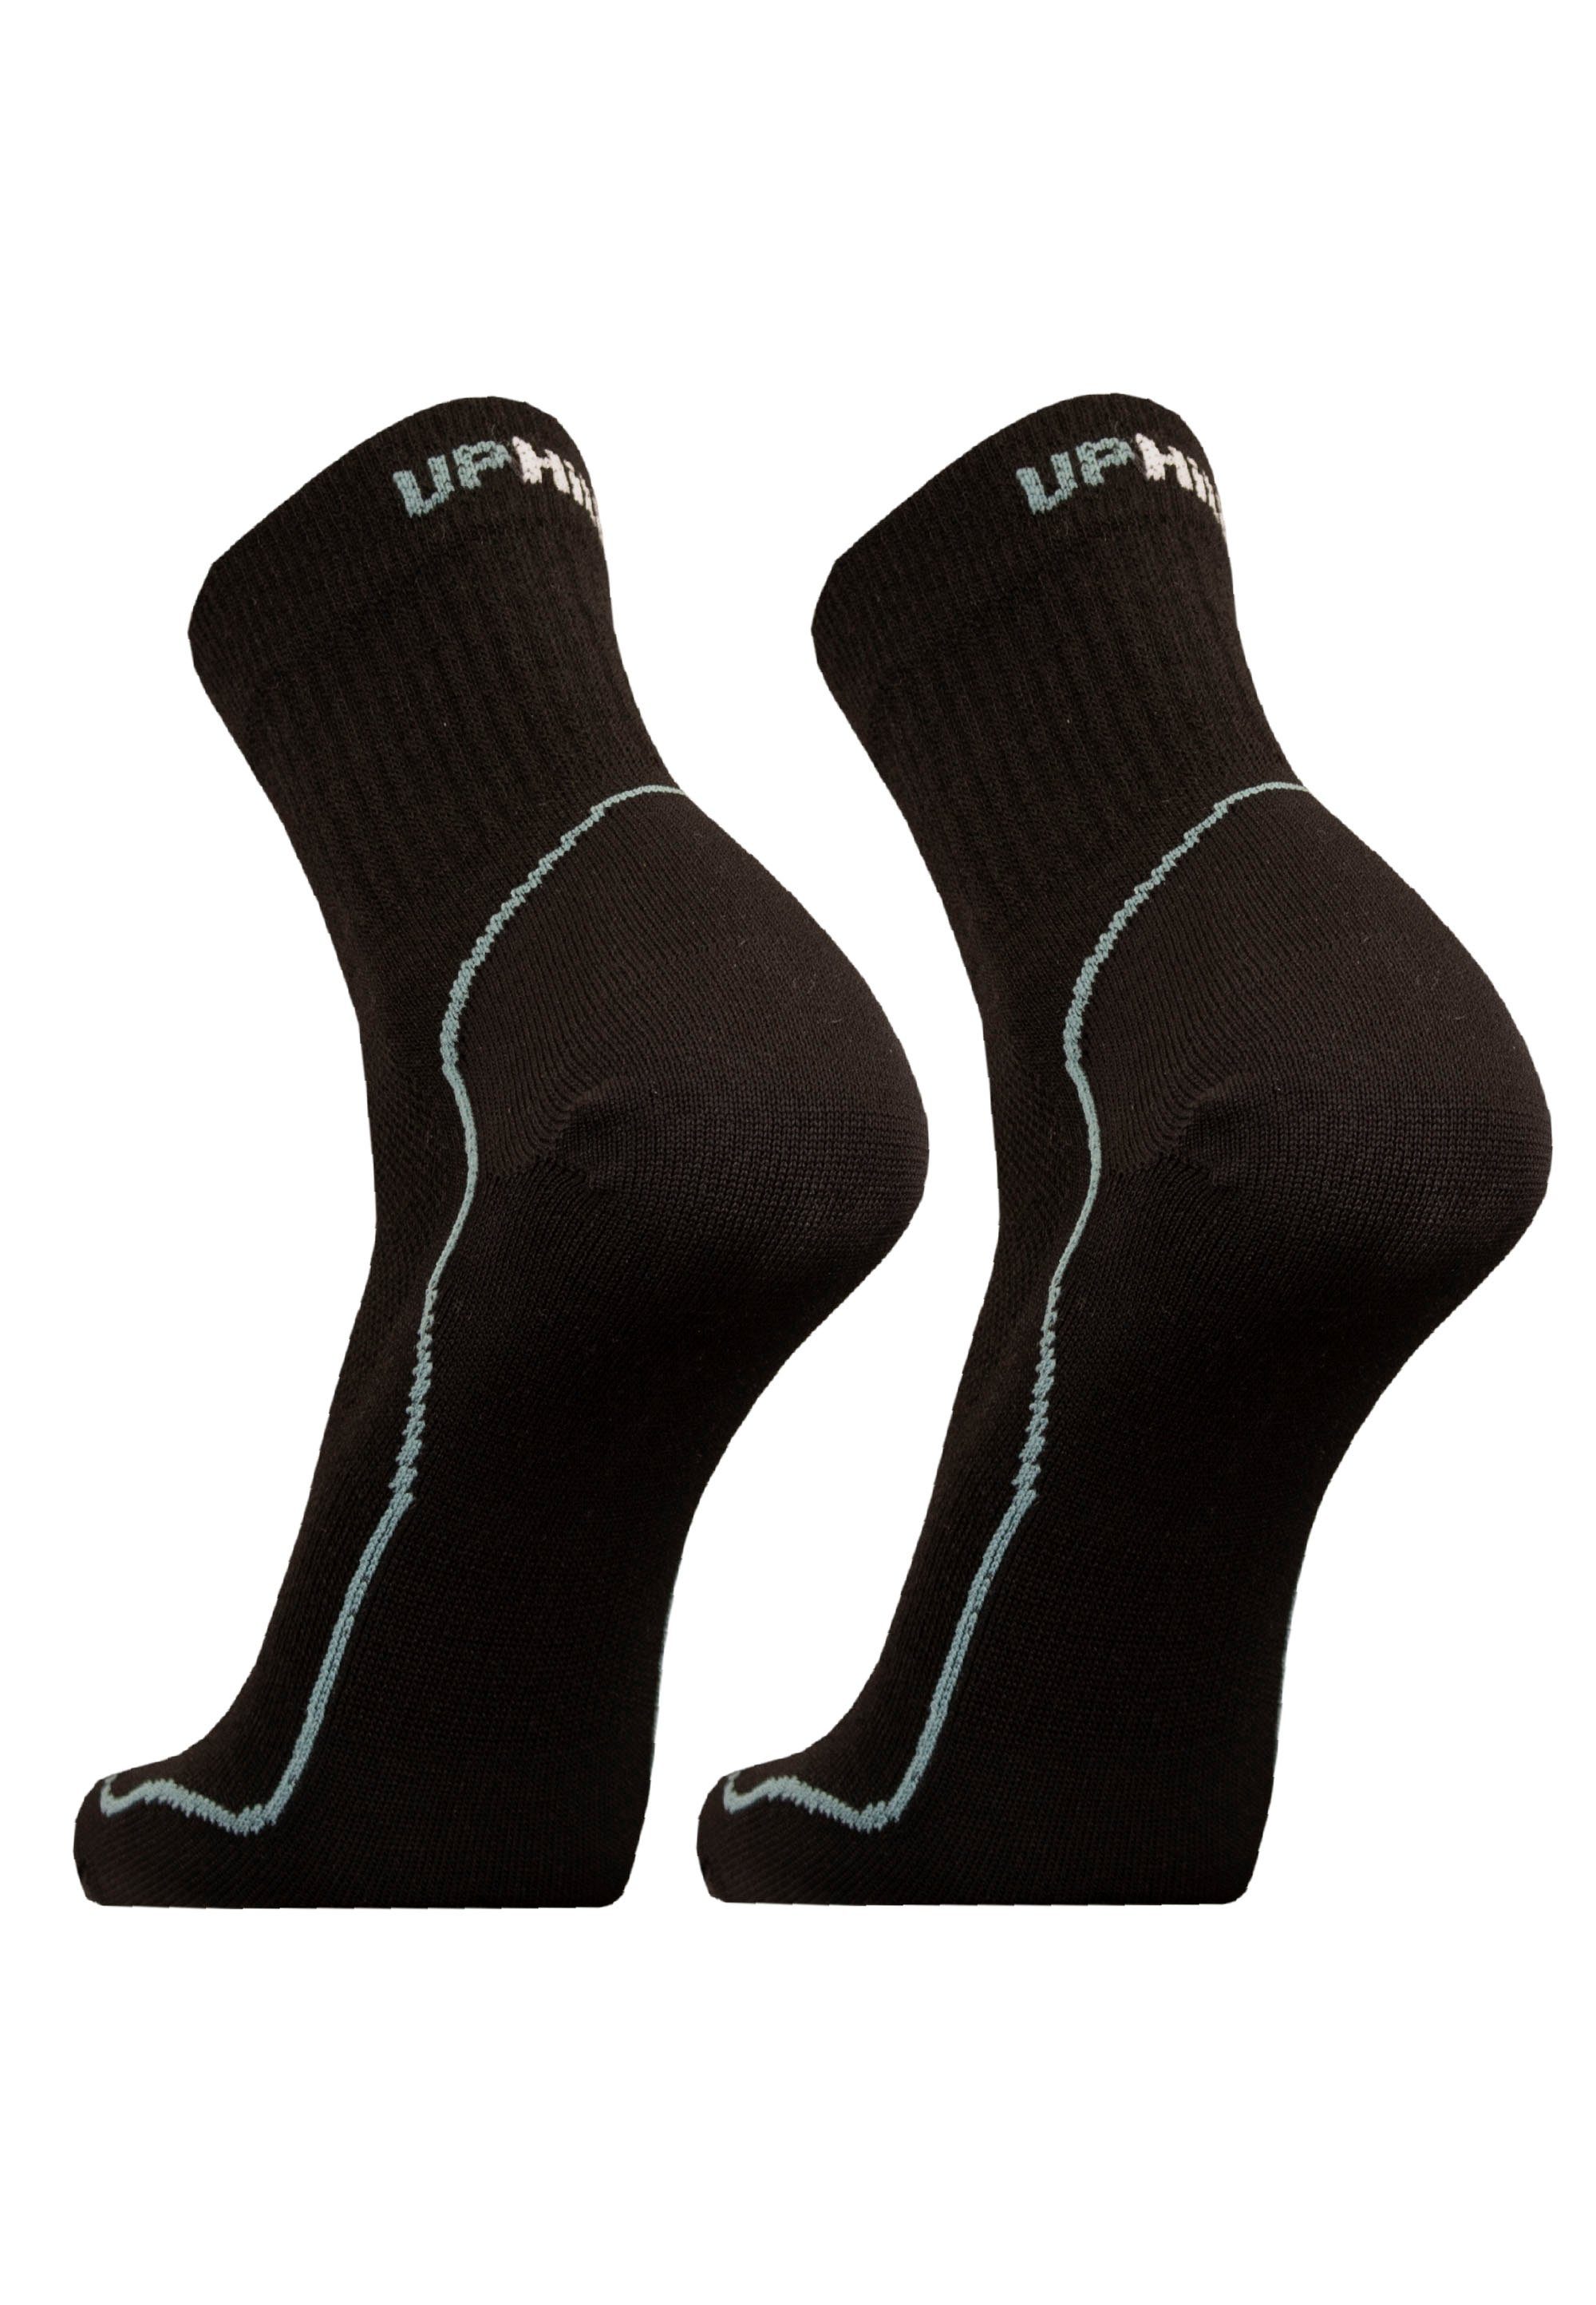 schwarz-grau reibende UphillSport ohne (2-Paar) Nähte Socken